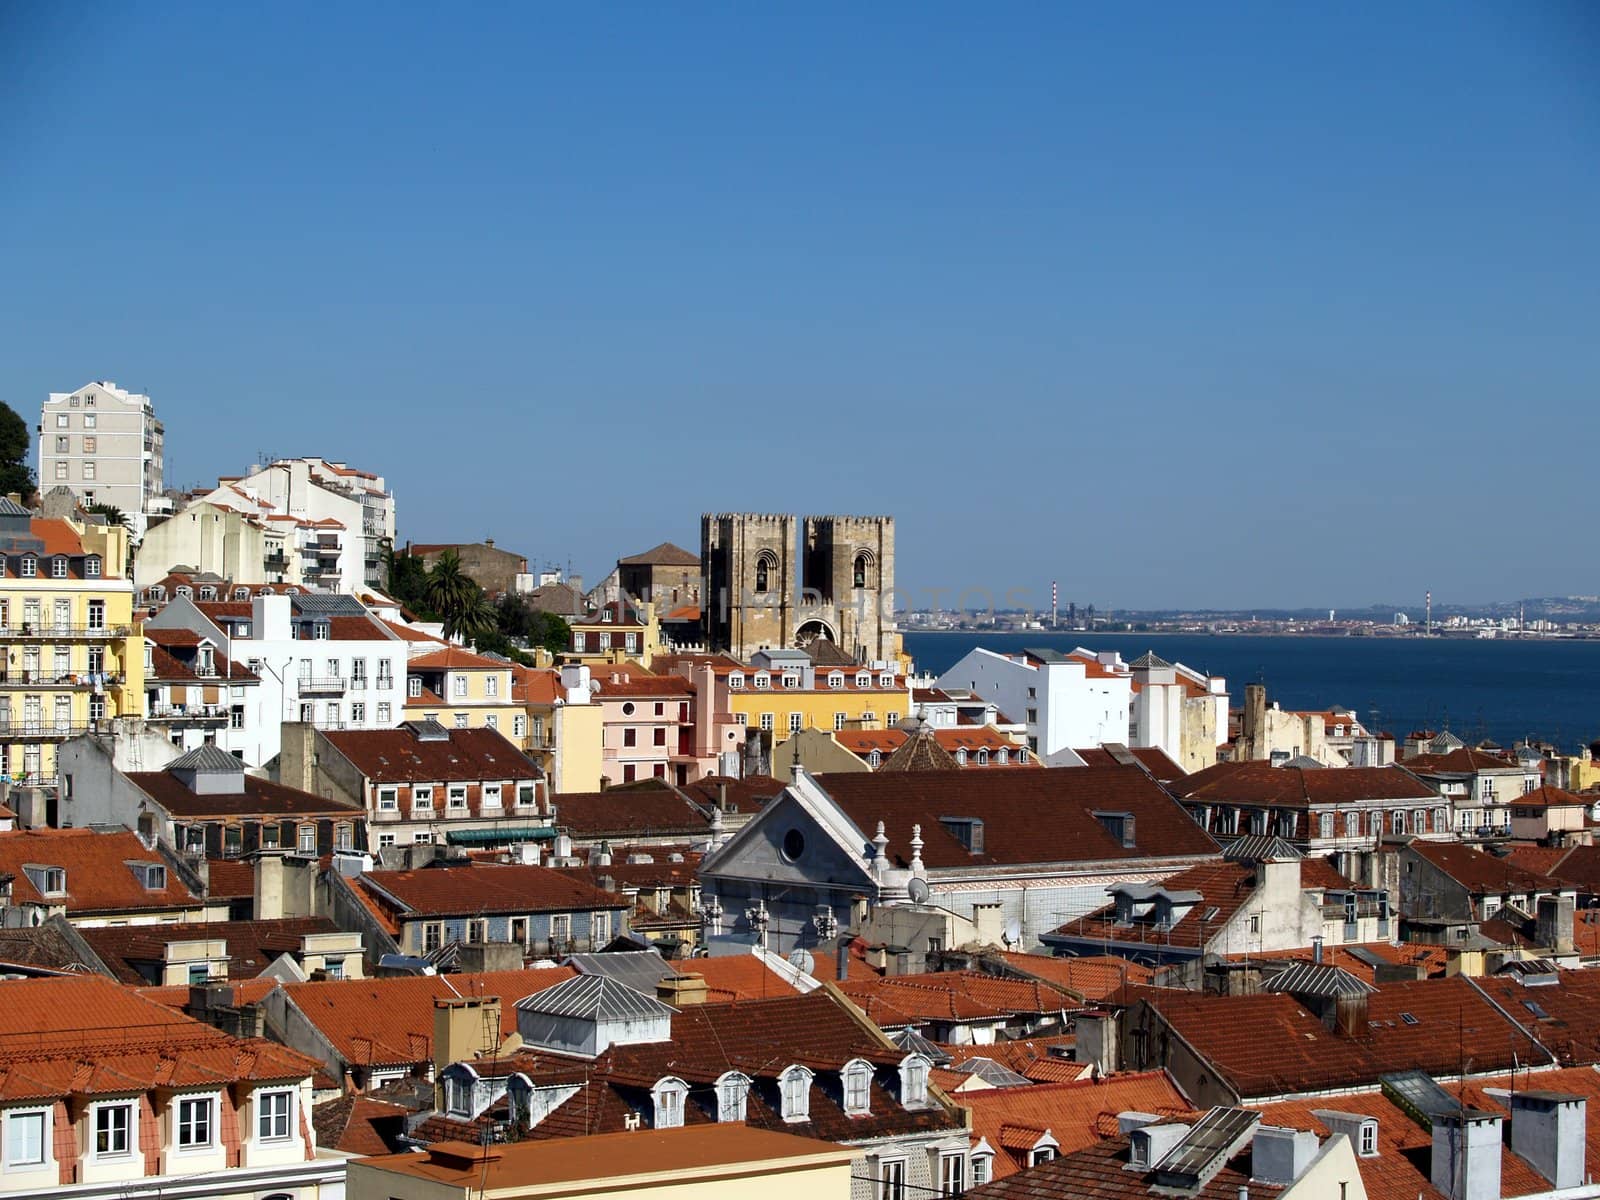 Lisbon. by vsphoto